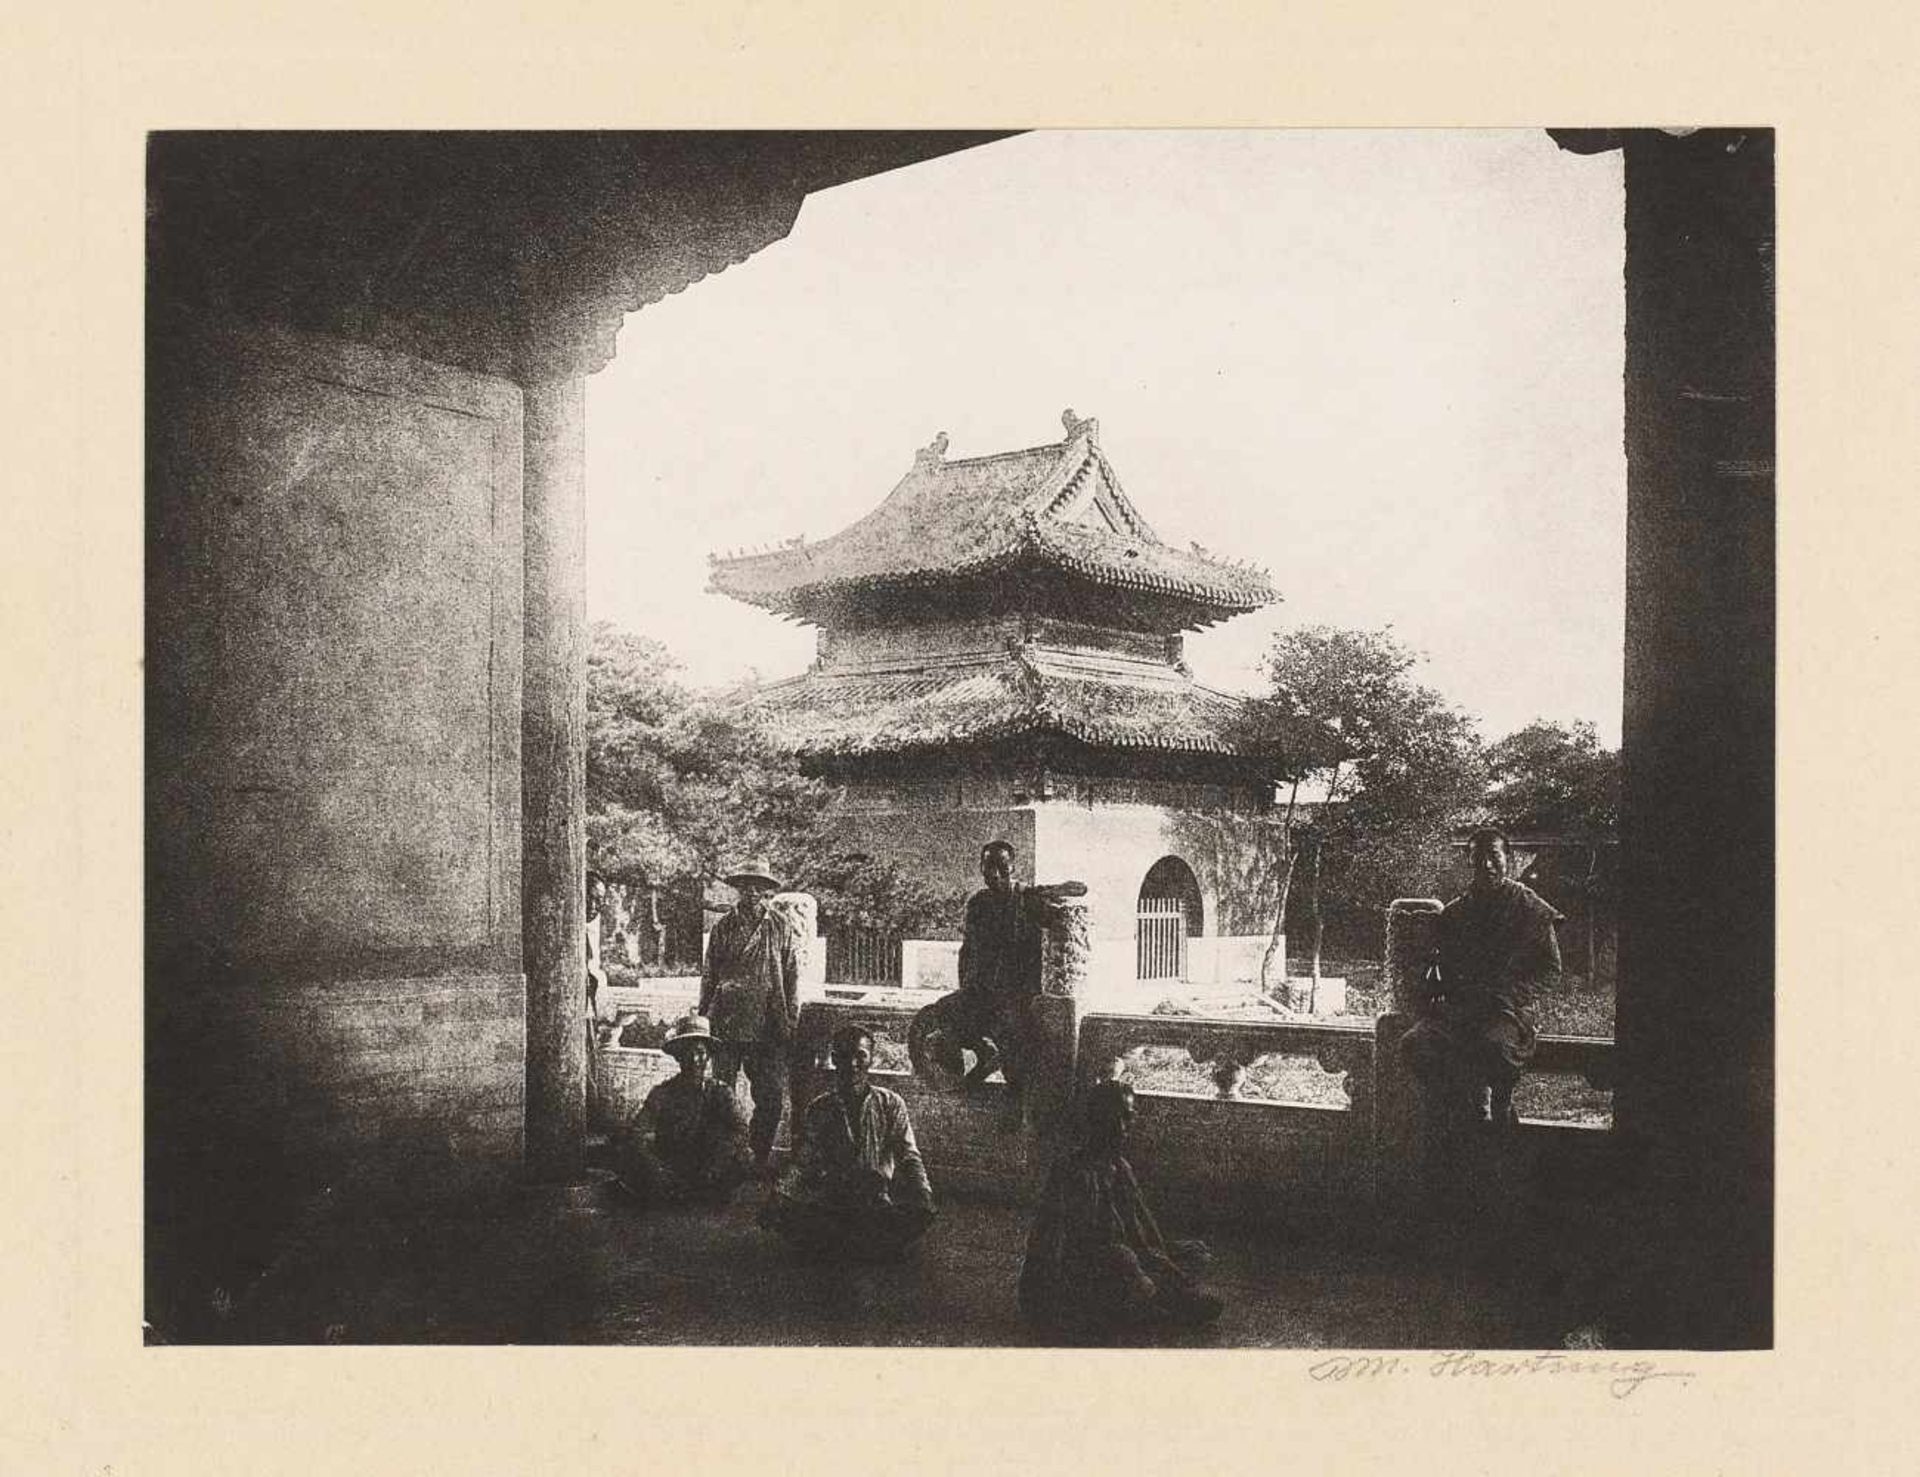 SIEBZEHN HISTORISCHE FOTOS DER VERBOTENEN STADT UND VOM SOMMERPALAST. China. Datiert 1938 auf dem - Bild 7 aus 19